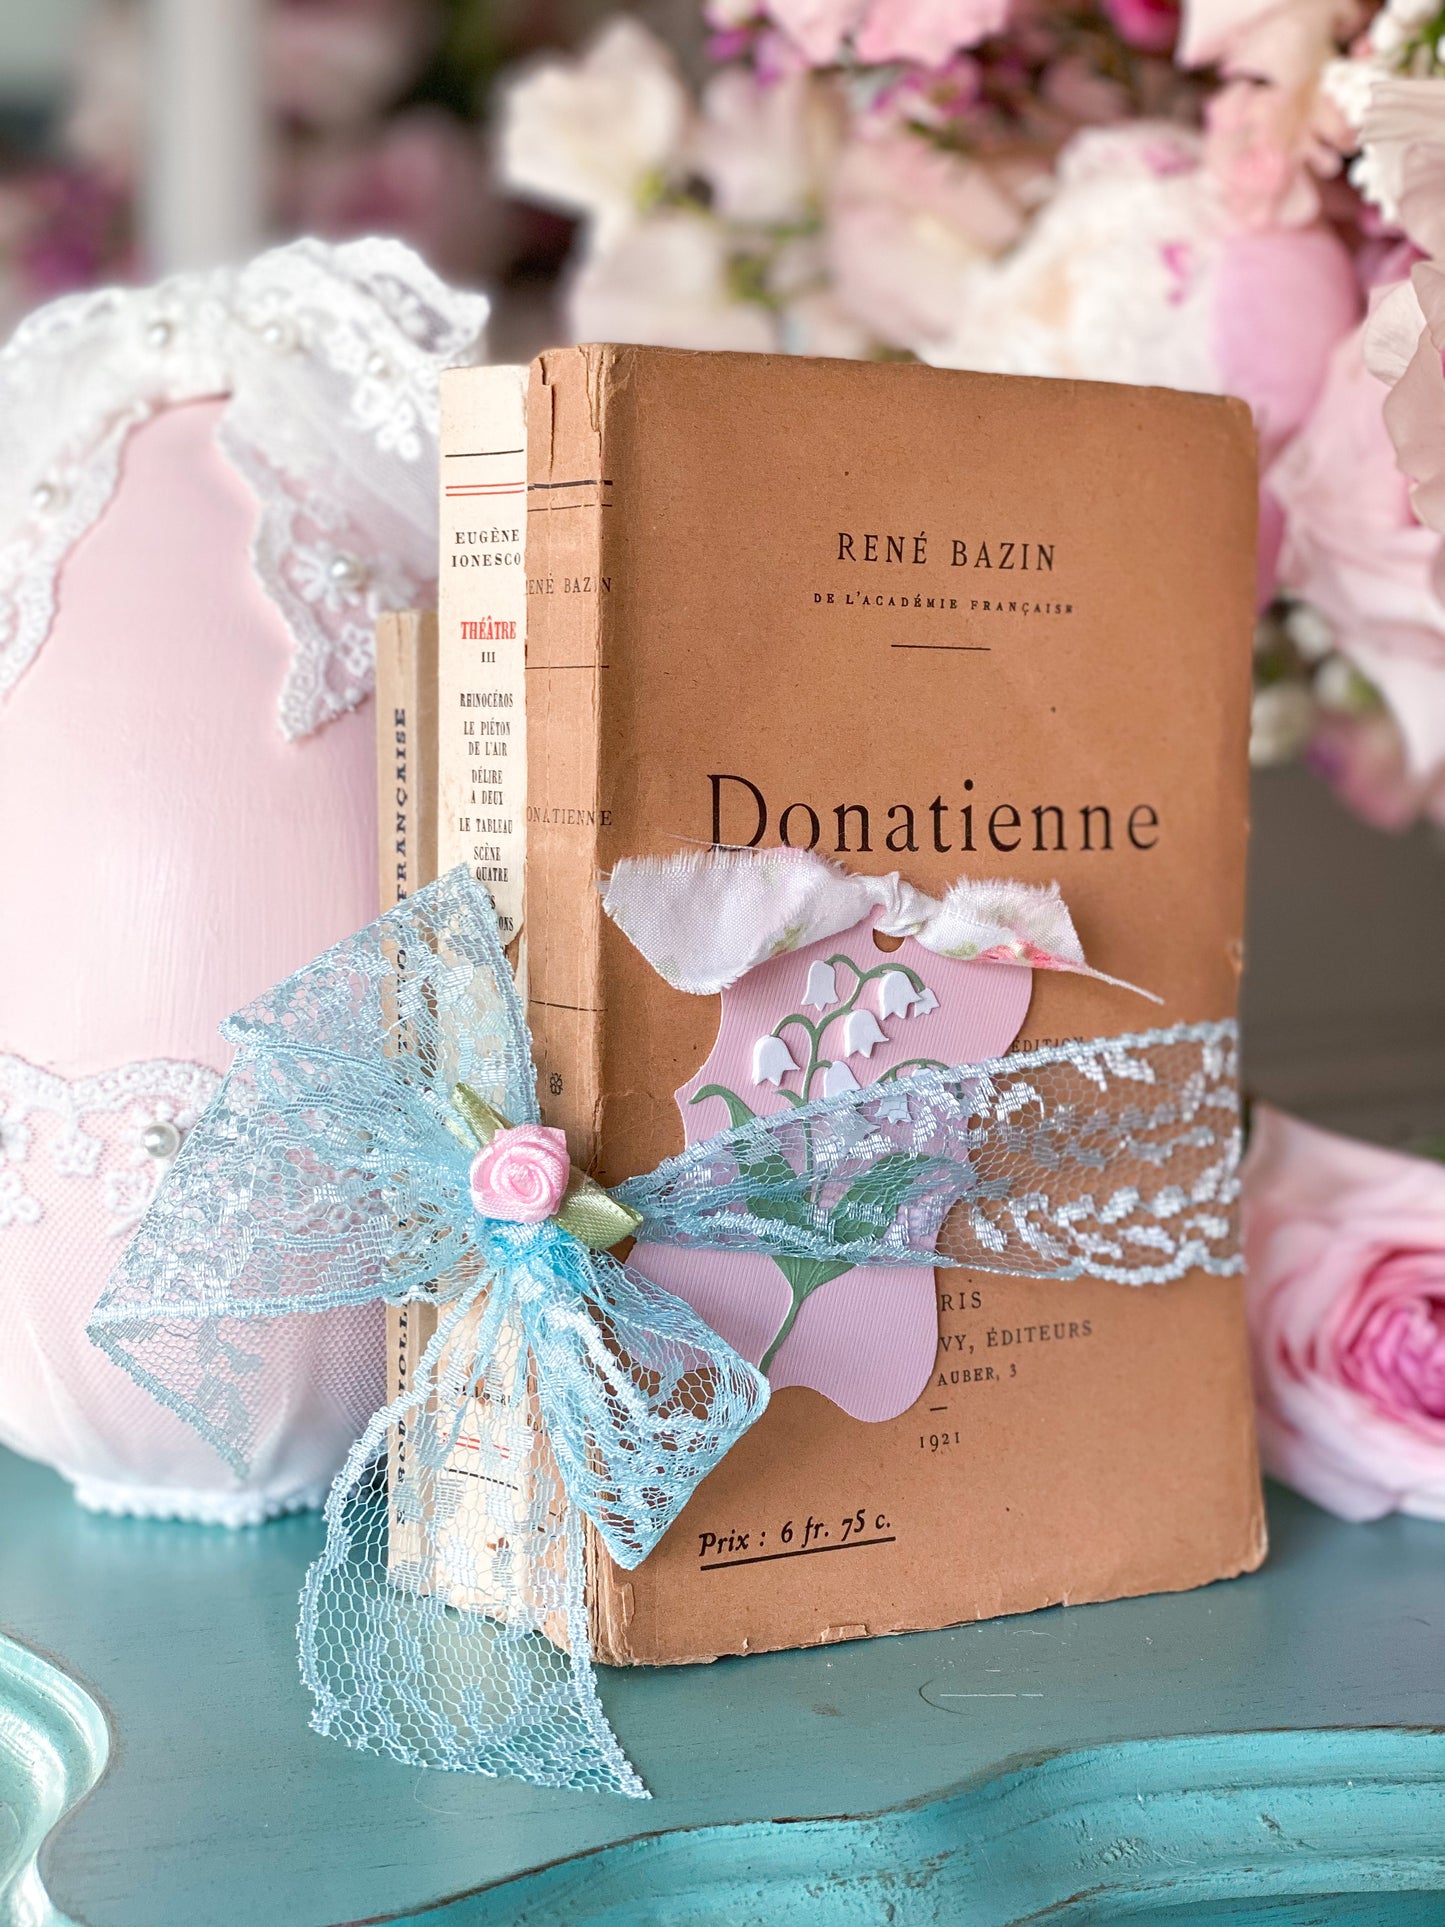 Libro en rústica francés de libros rosas y crema.